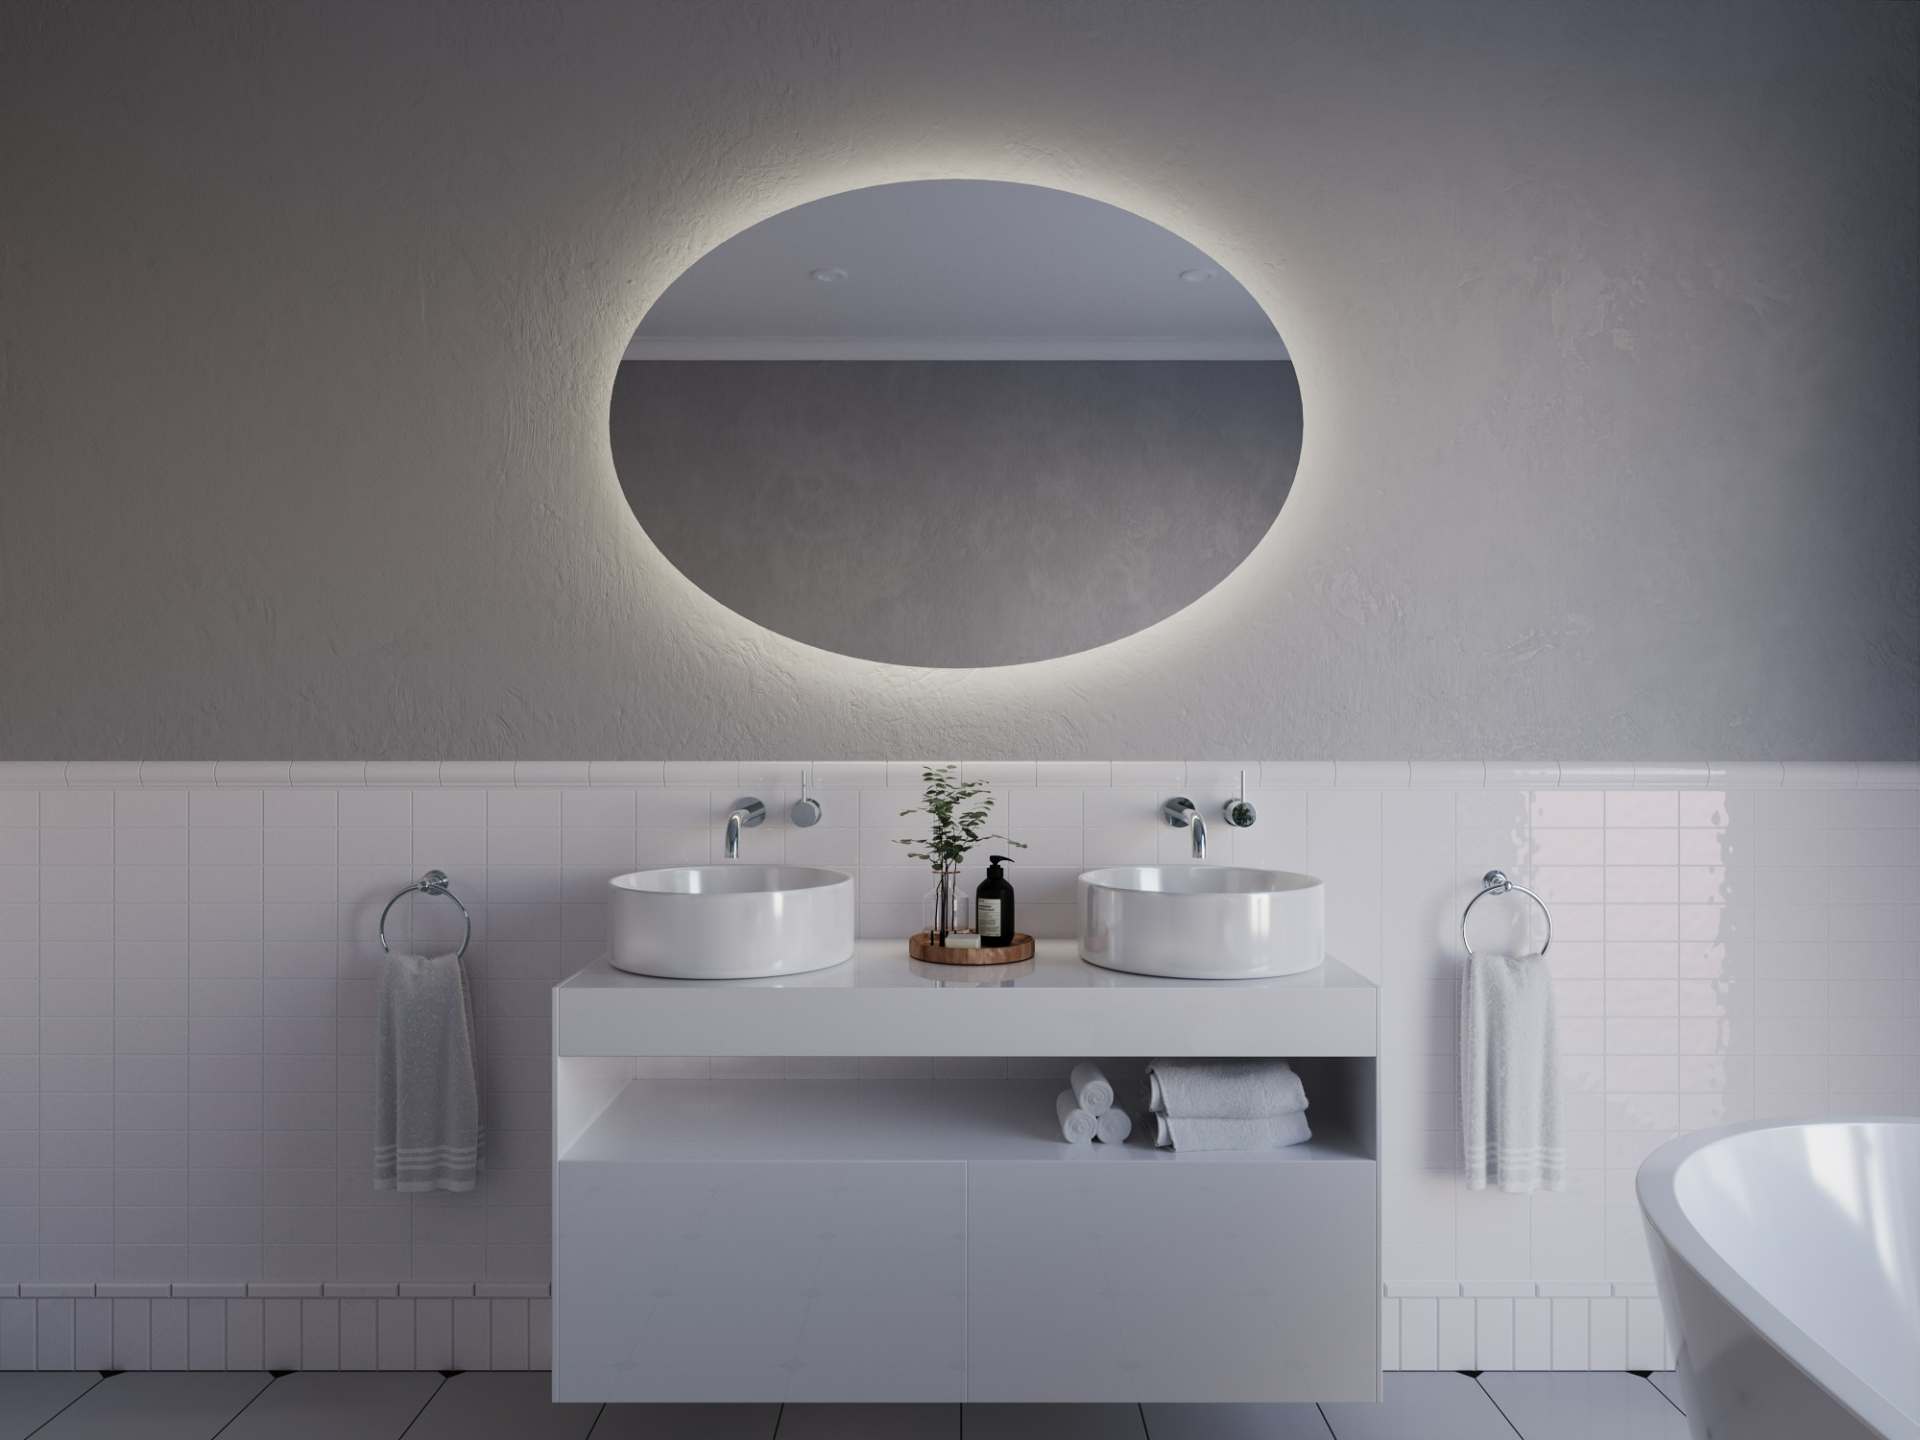 Ovalno ogledalo z LED osvetlitvijo A32